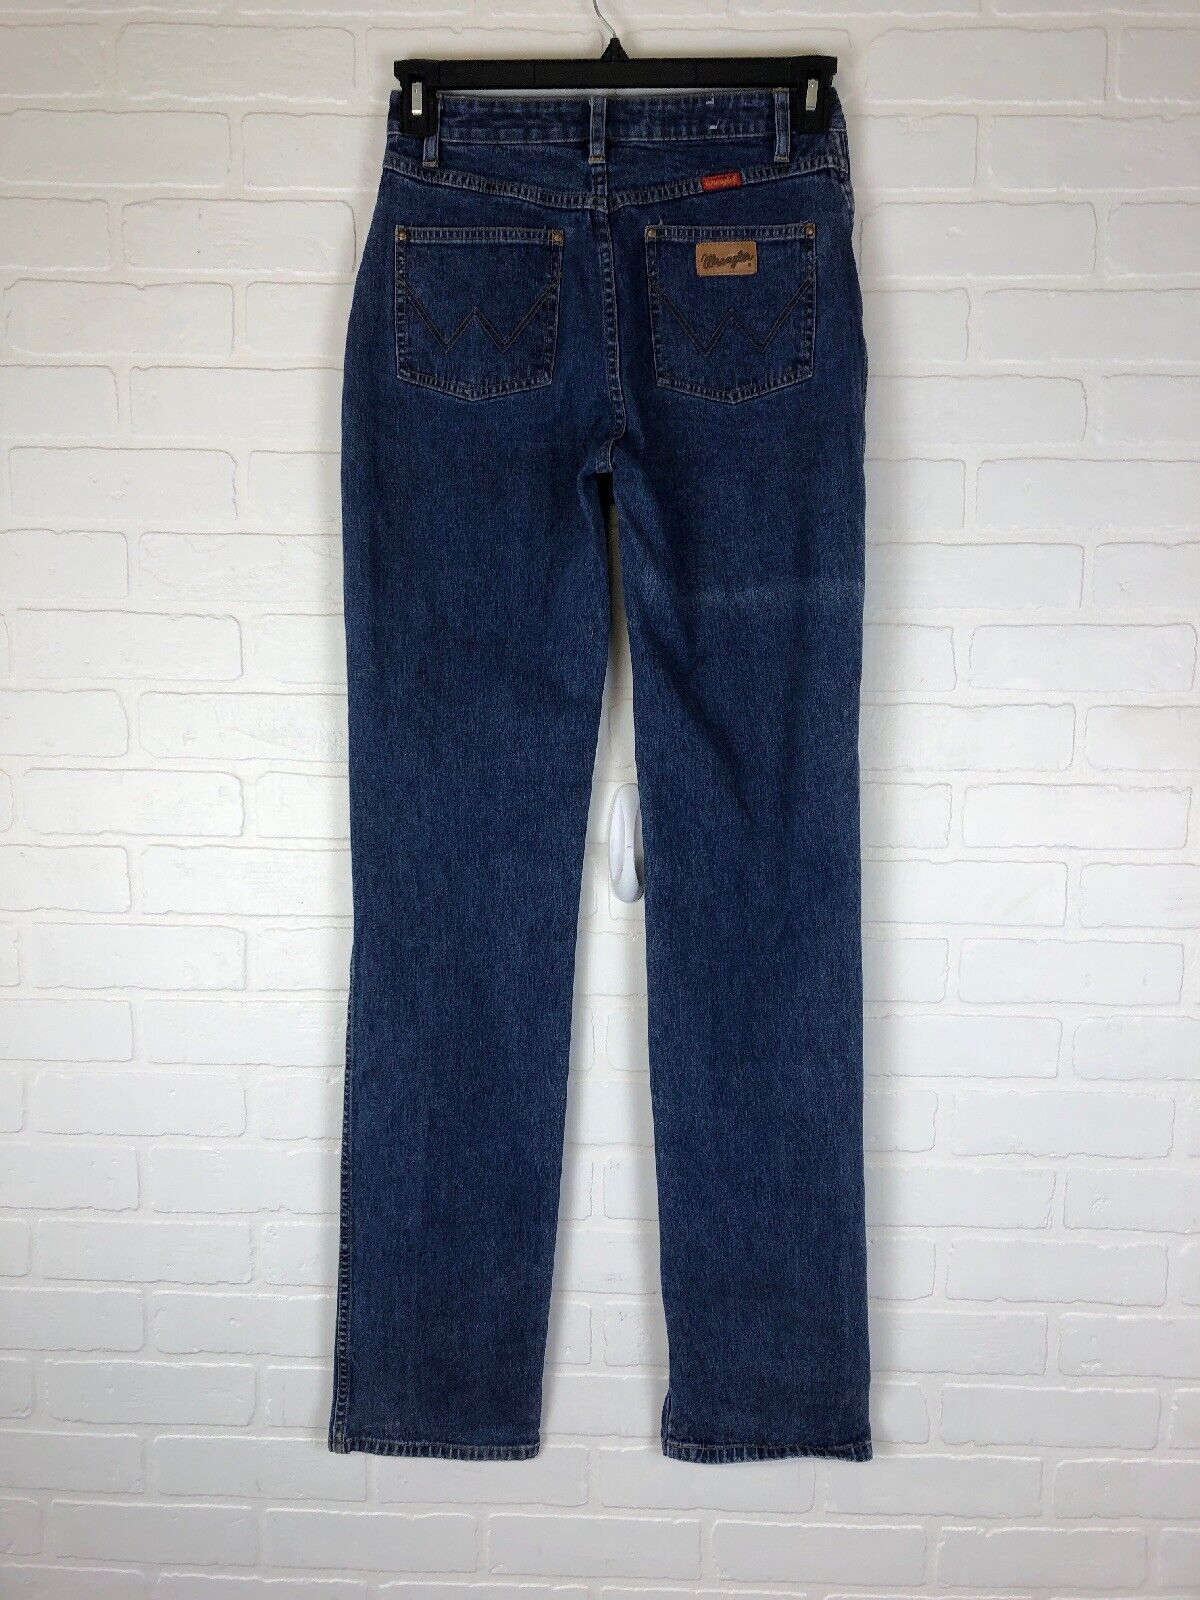 VTG 80’s Wrangler Super Soft Denim Jeans Tall Siz… - image 5